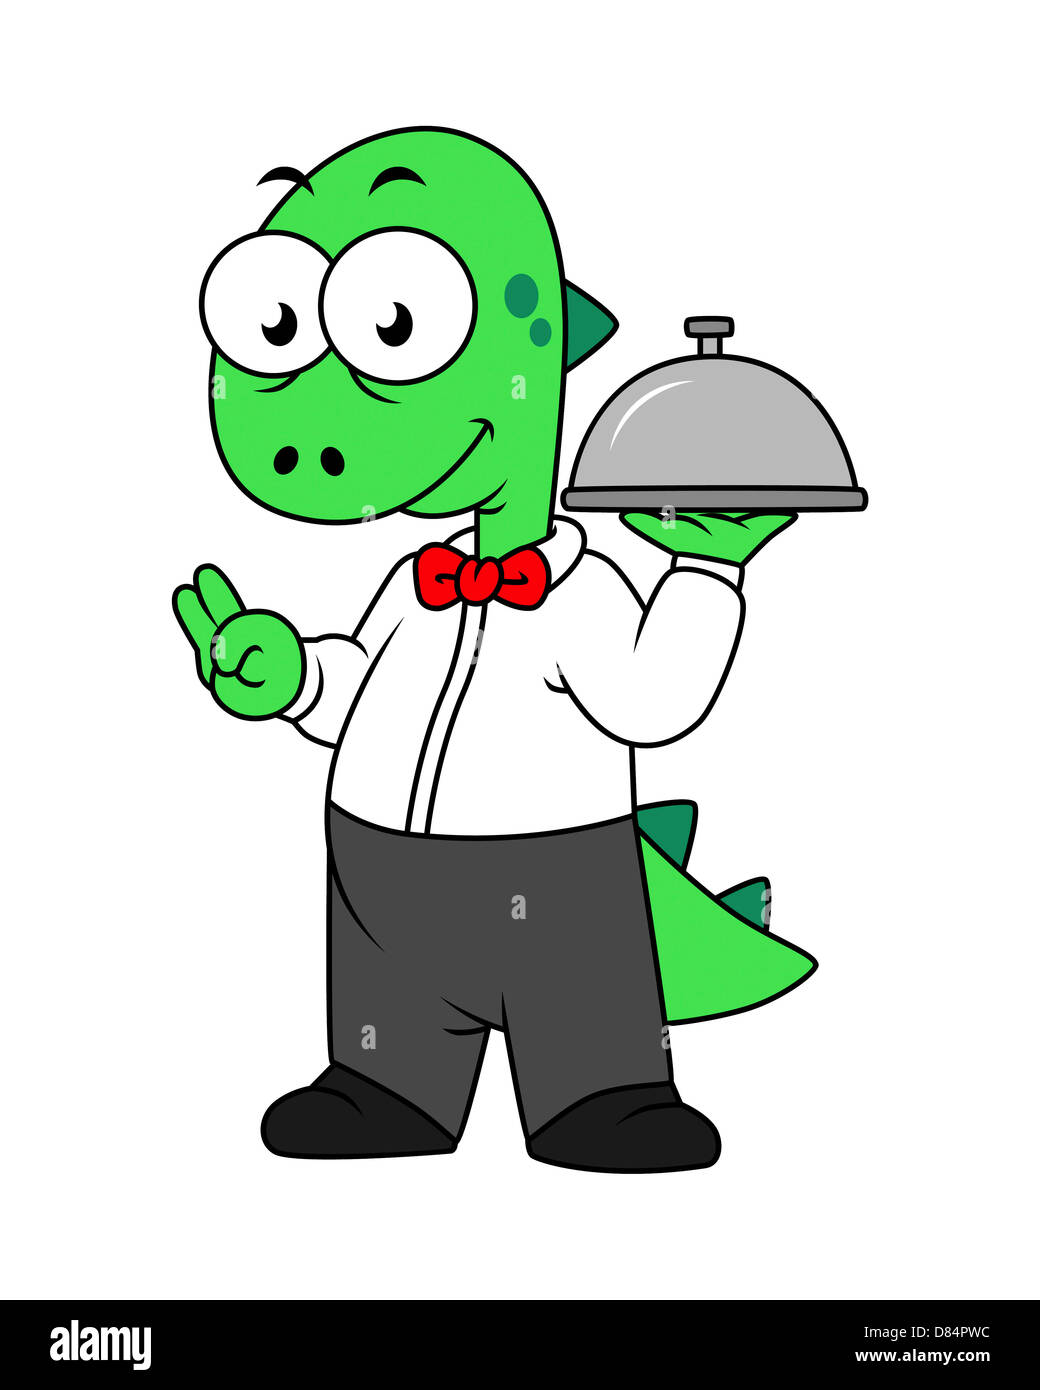 Illustration of a Tyrannosaurus Rex food waiter. Stock Photo